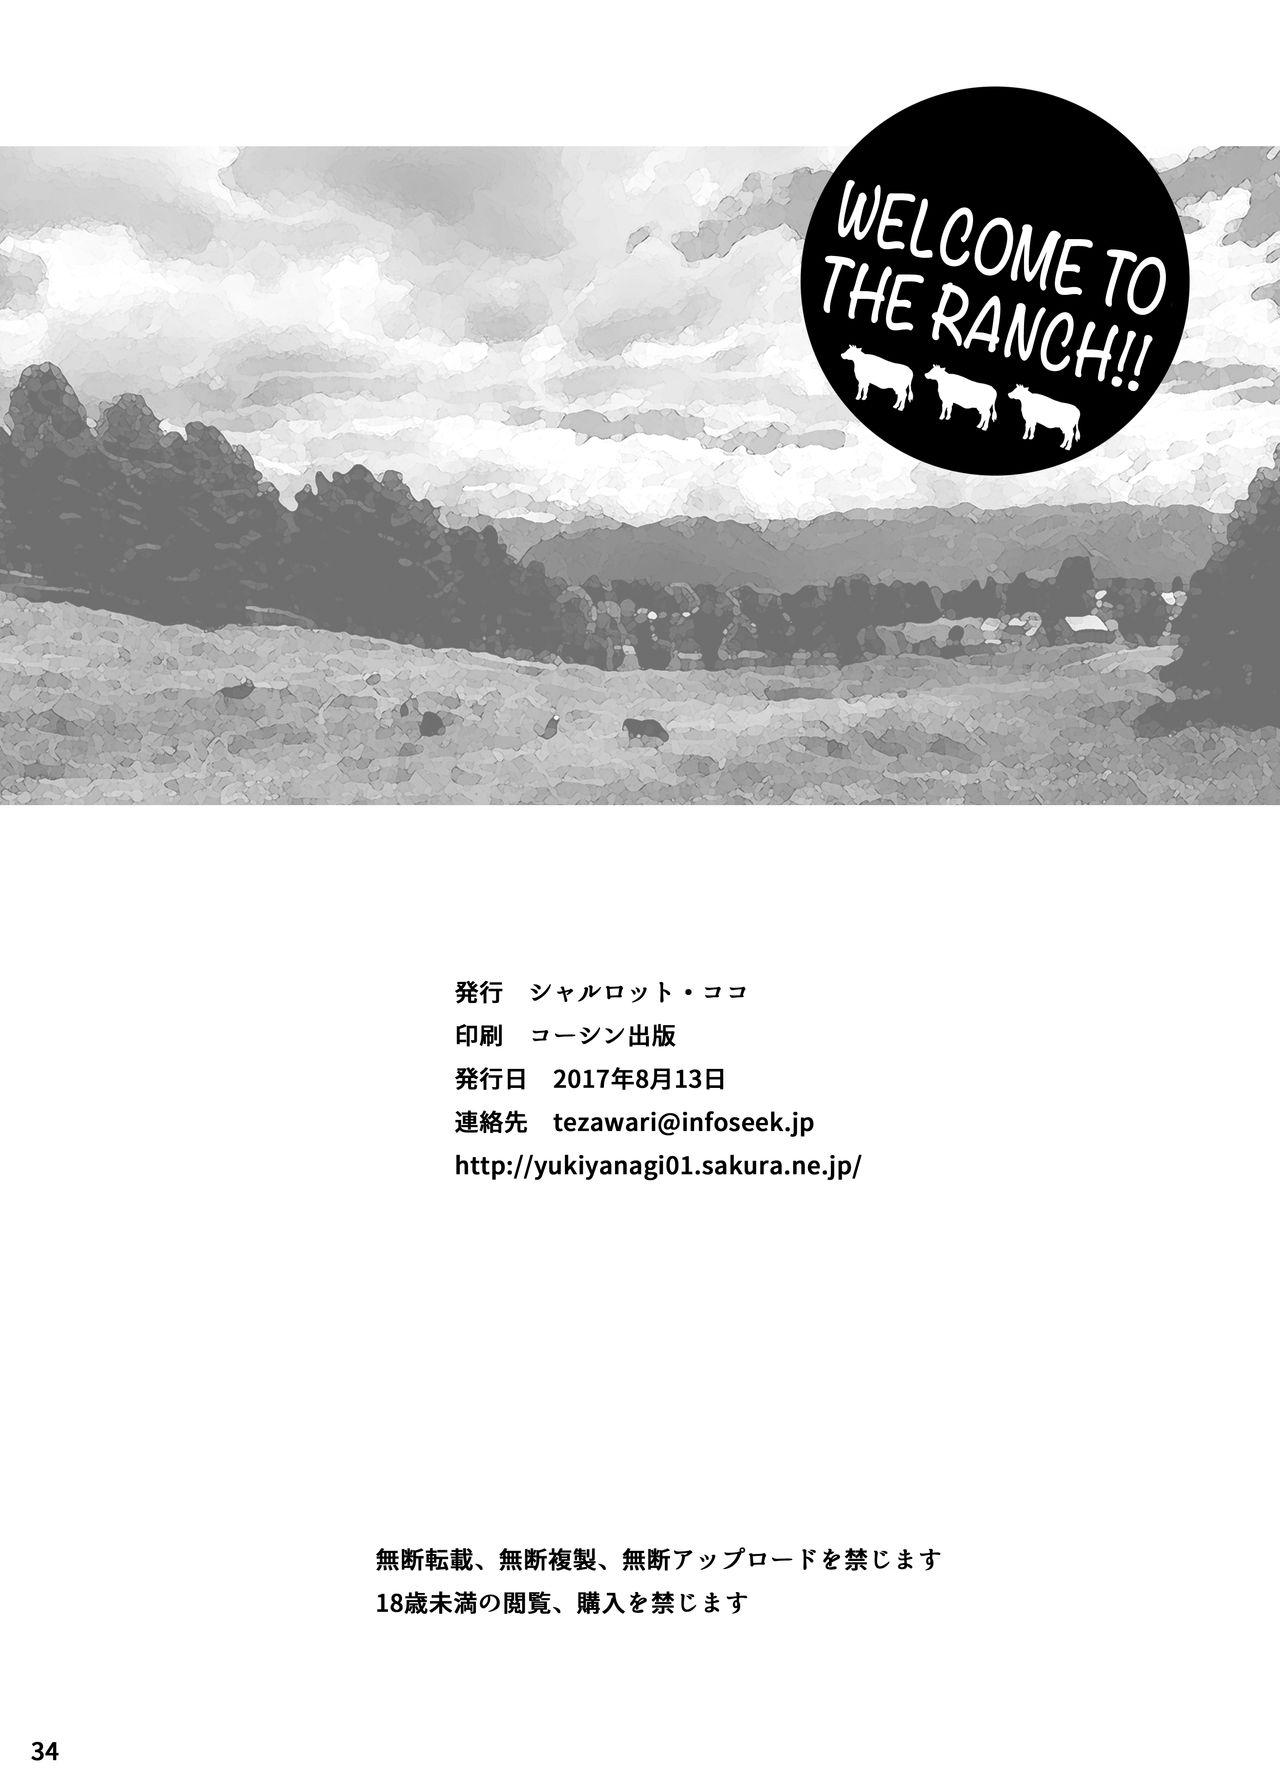 Yukiyanagi no hon 40 Bokujou e Youkoso! ! | Welcome to the Ranch!! Yukiyanagi's Book 40 31